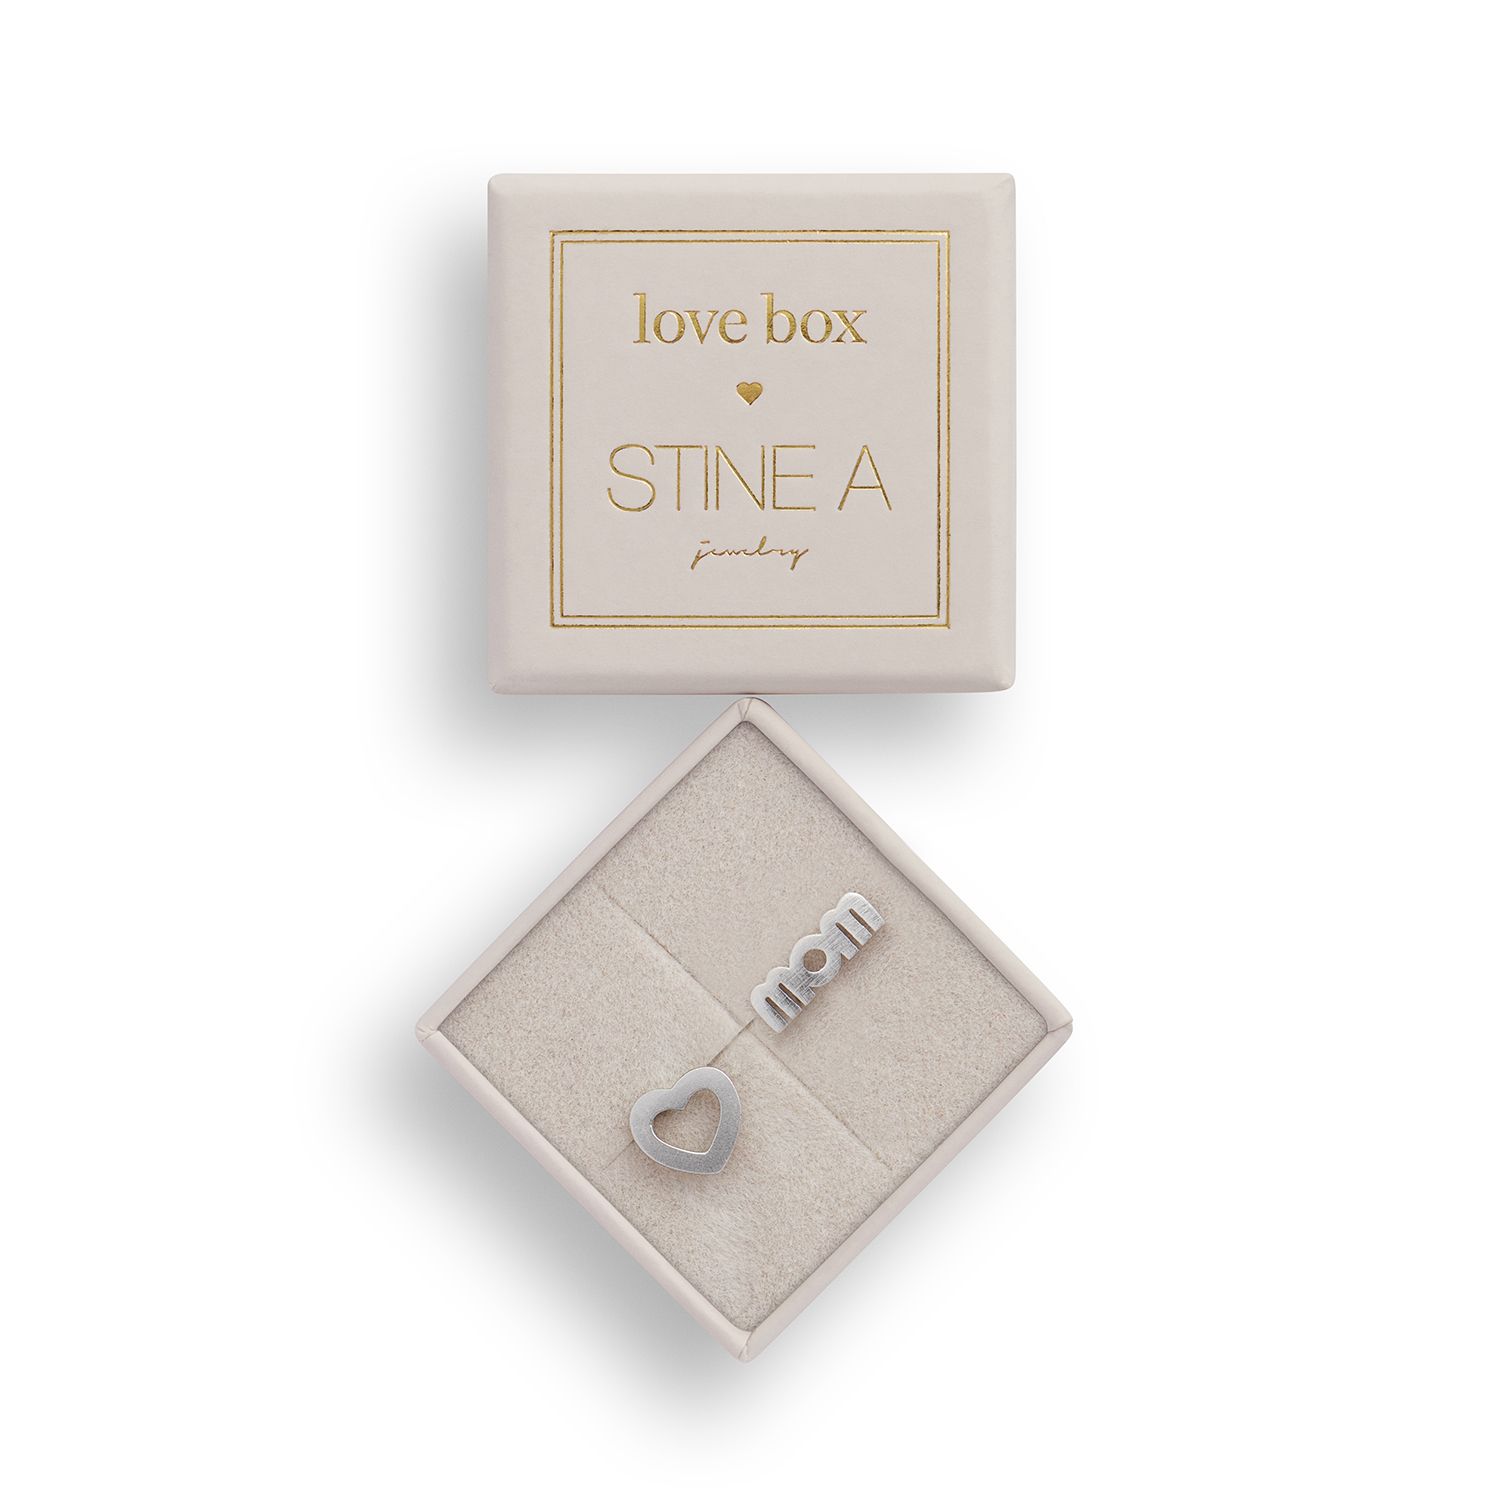 Stine A Love Box 124 - 7000-124 - Stine A